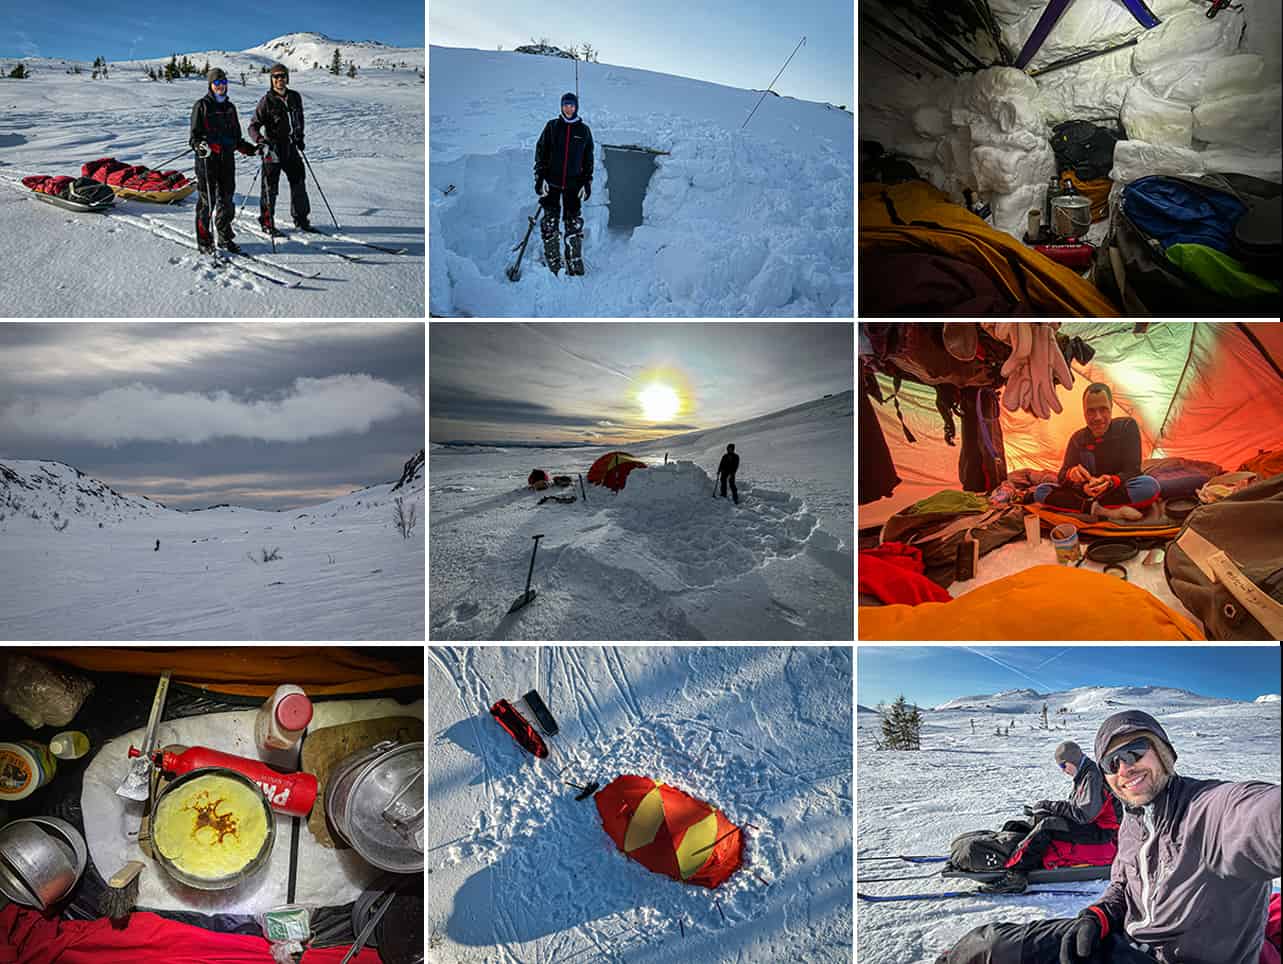 Vintertur, Far og datter, Kvitåvatn, Norge [Mikroeventyr] med eventyrer og polarfare Erik B. Jørgensen